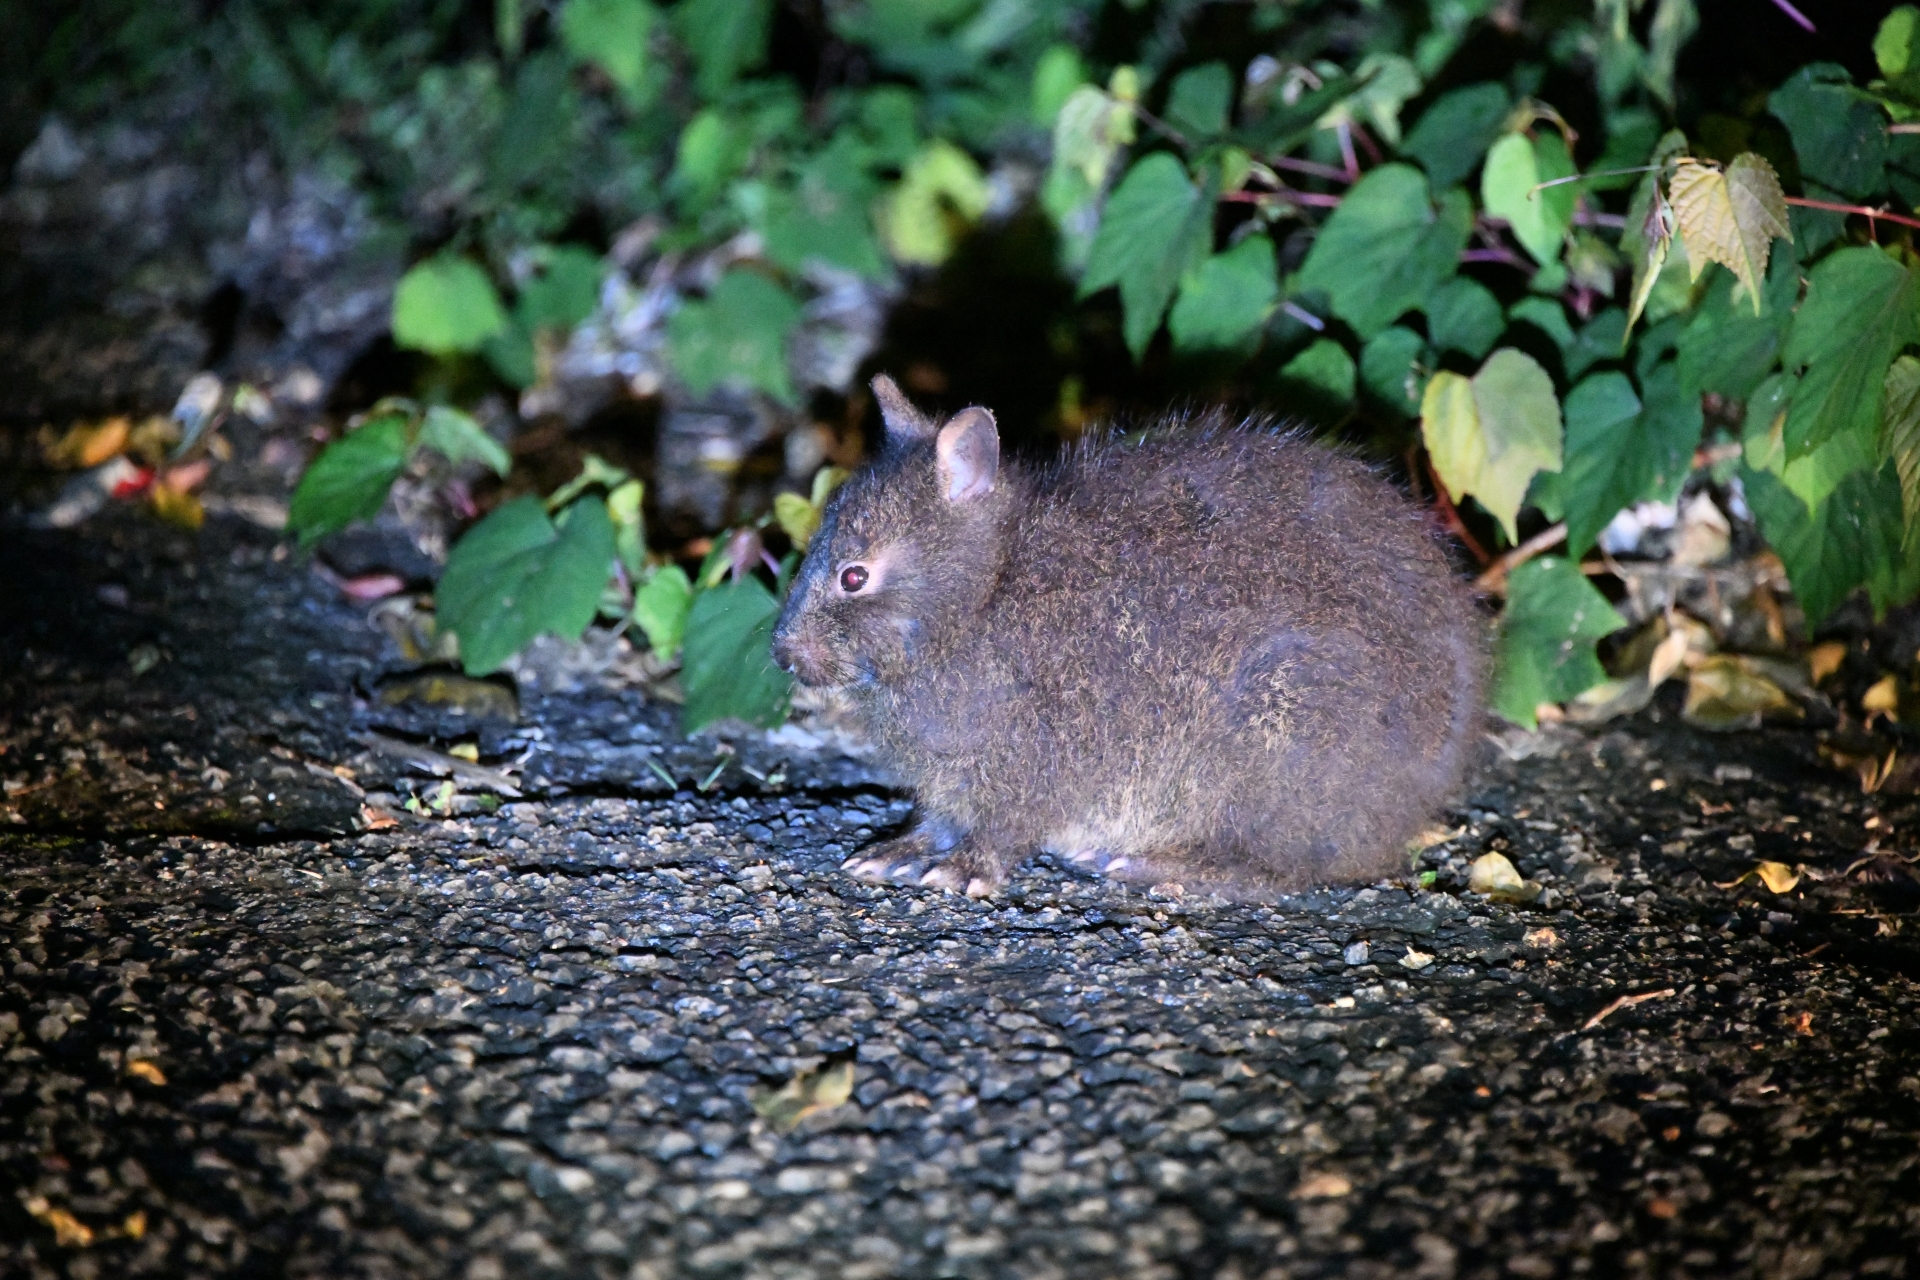 奄美大島に生息する「アマミノクロウサギ」とは？高確率で遭遇できる